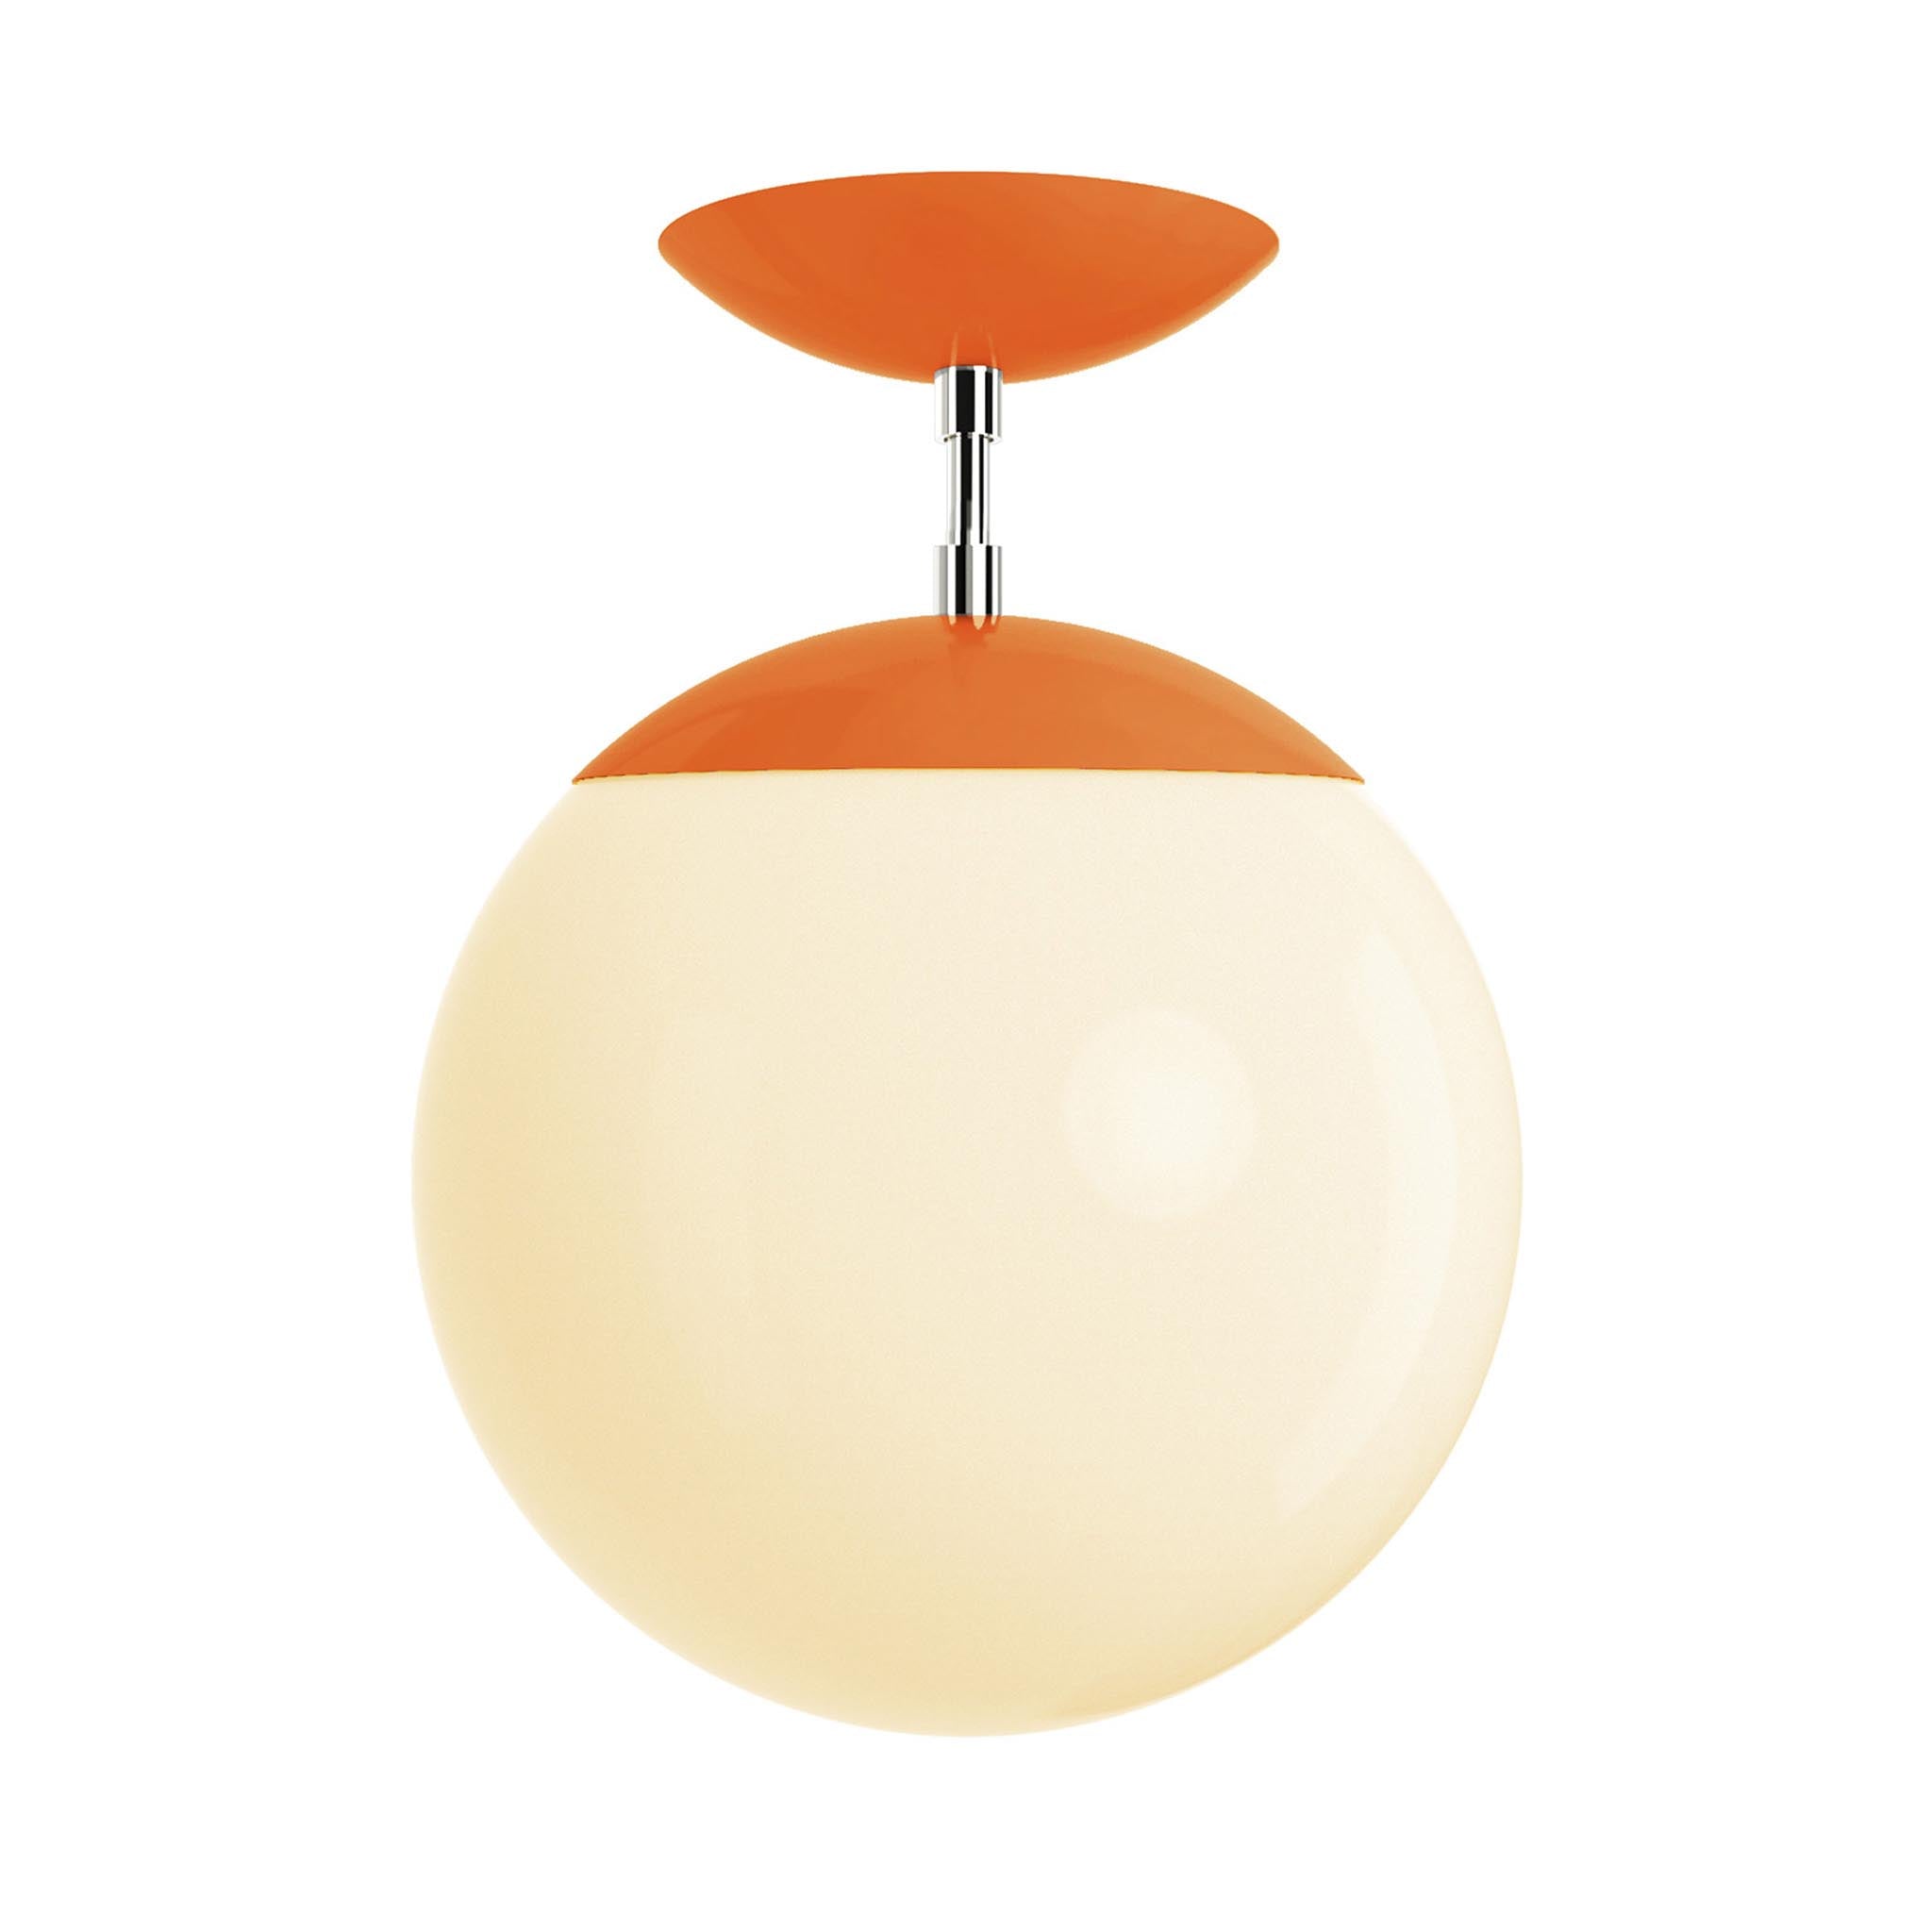 Polished nickel and orange cap globe flush mount 10" dutton brown lighting